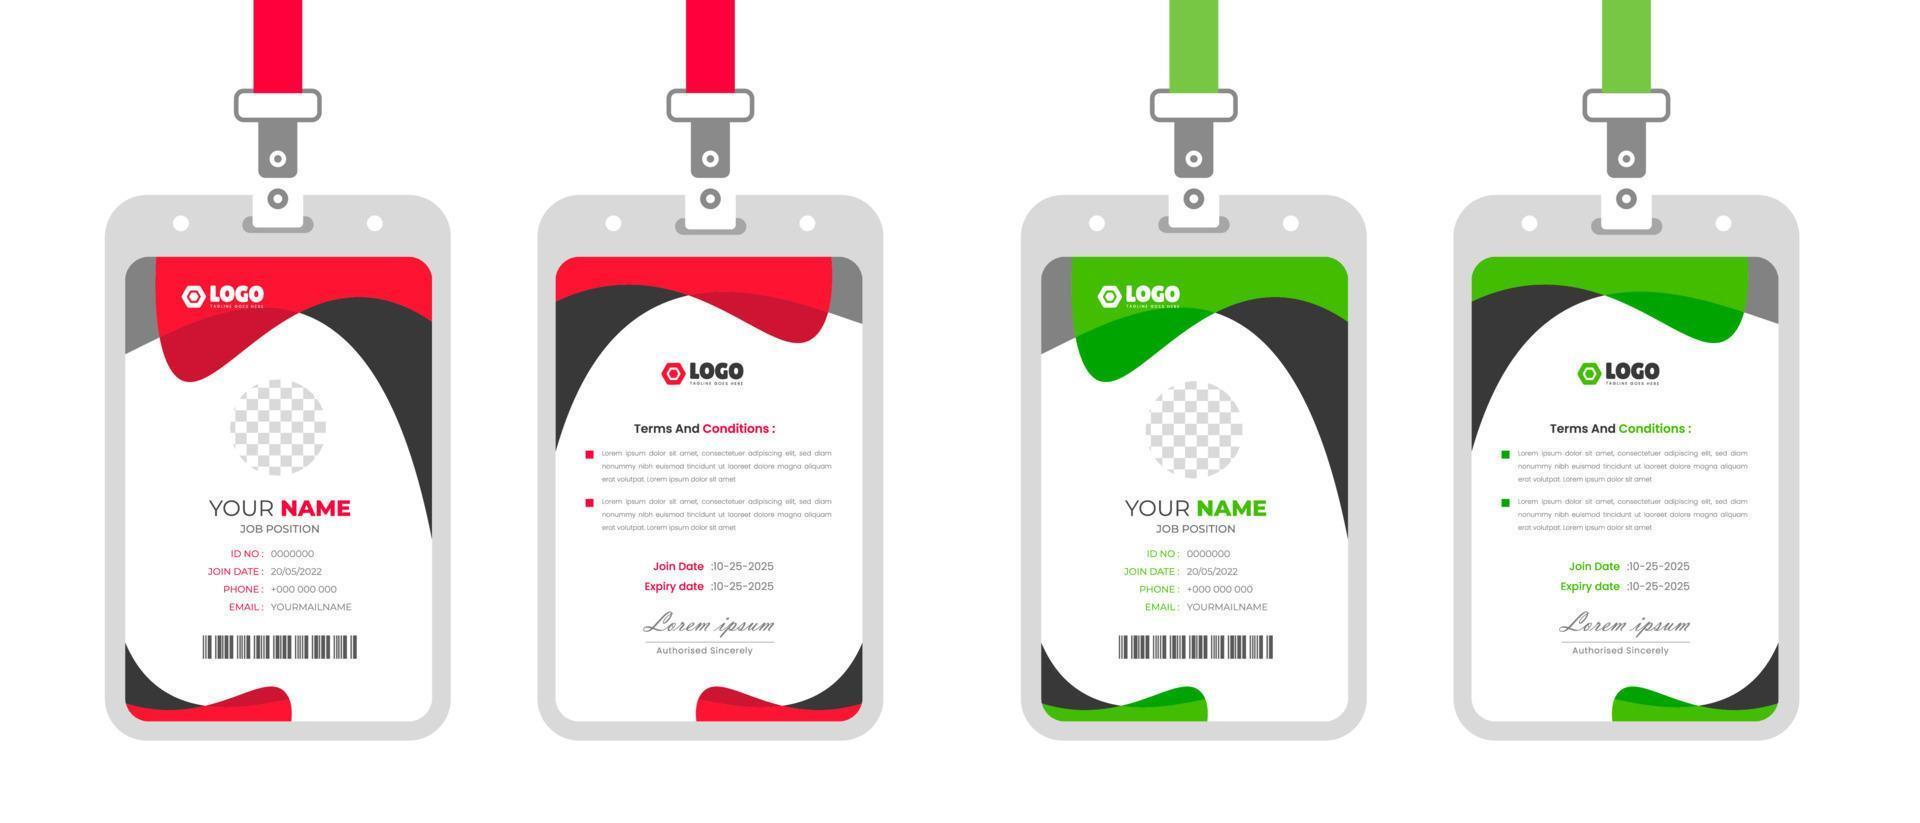 entreprise moderne et Facile affaires Bureau id carte conception empaqueter. entreprise entreprise employé identité carte modèle avec rouge et vert couleur. vecteur